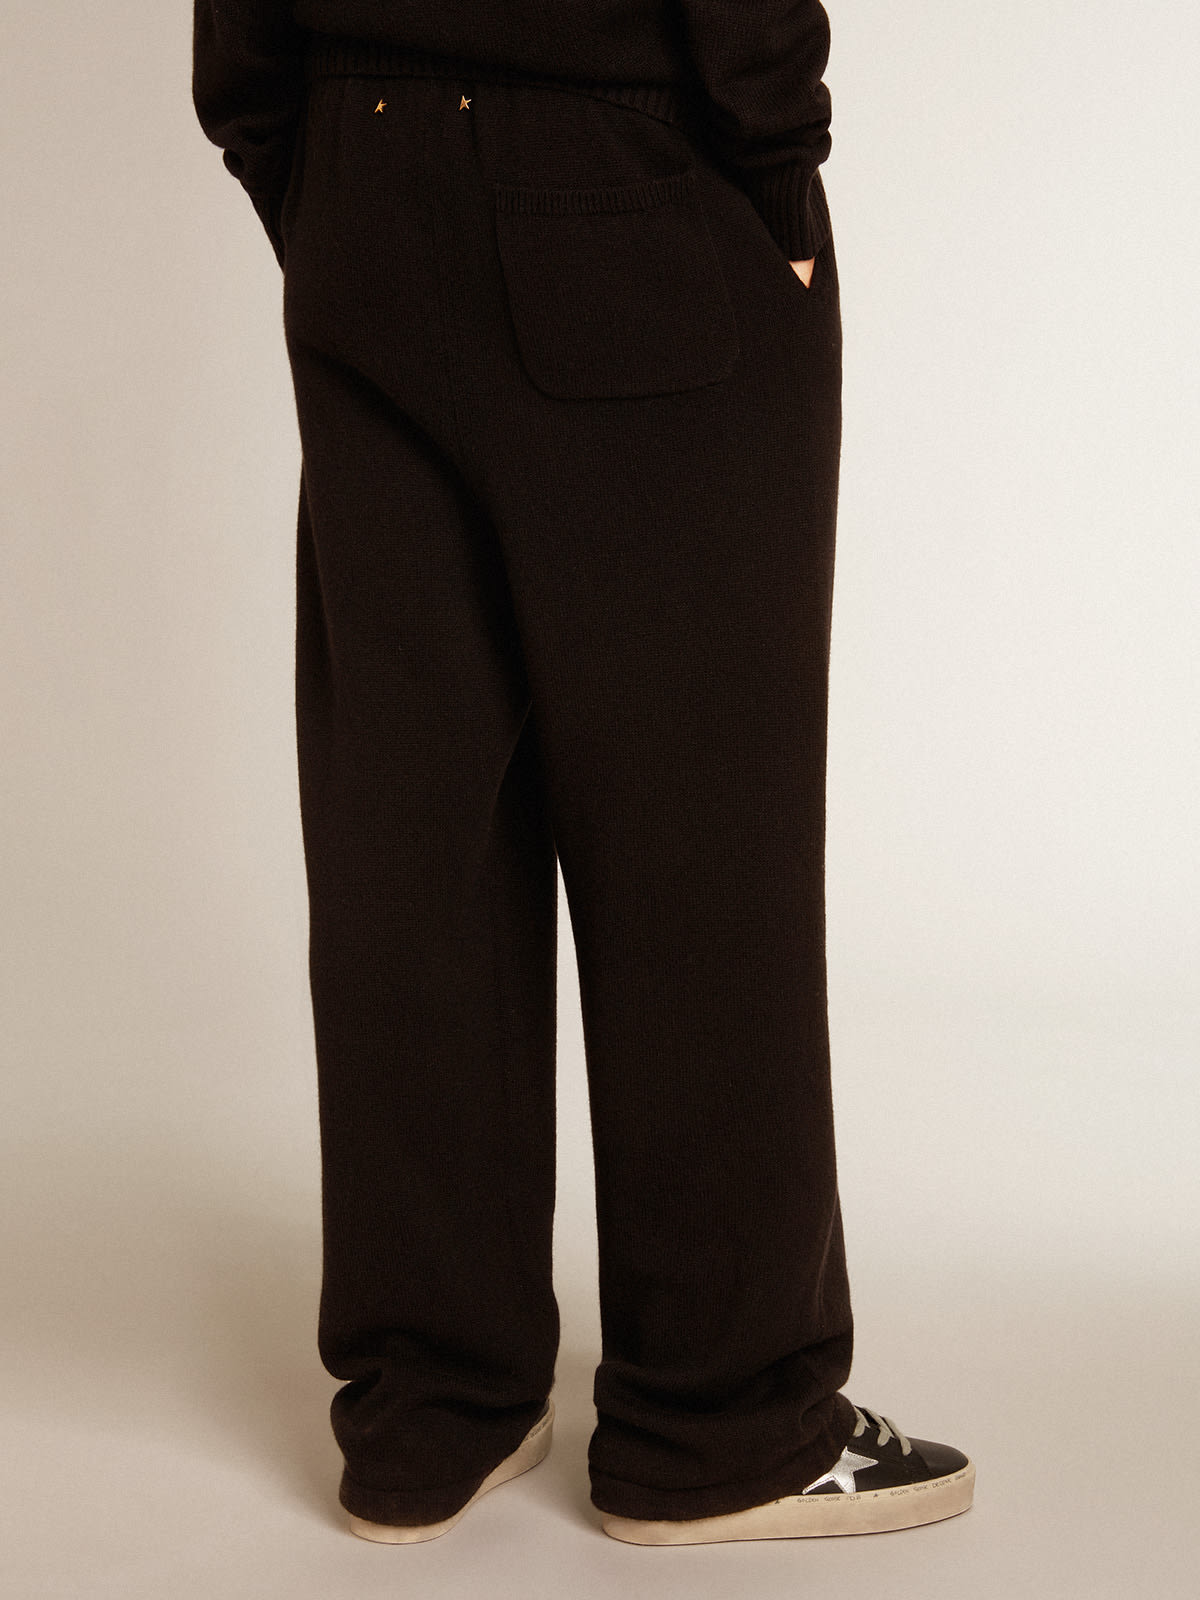 Golden Goose - Pantalón jogger de mujer en mezcla de cachemira de color negro in 